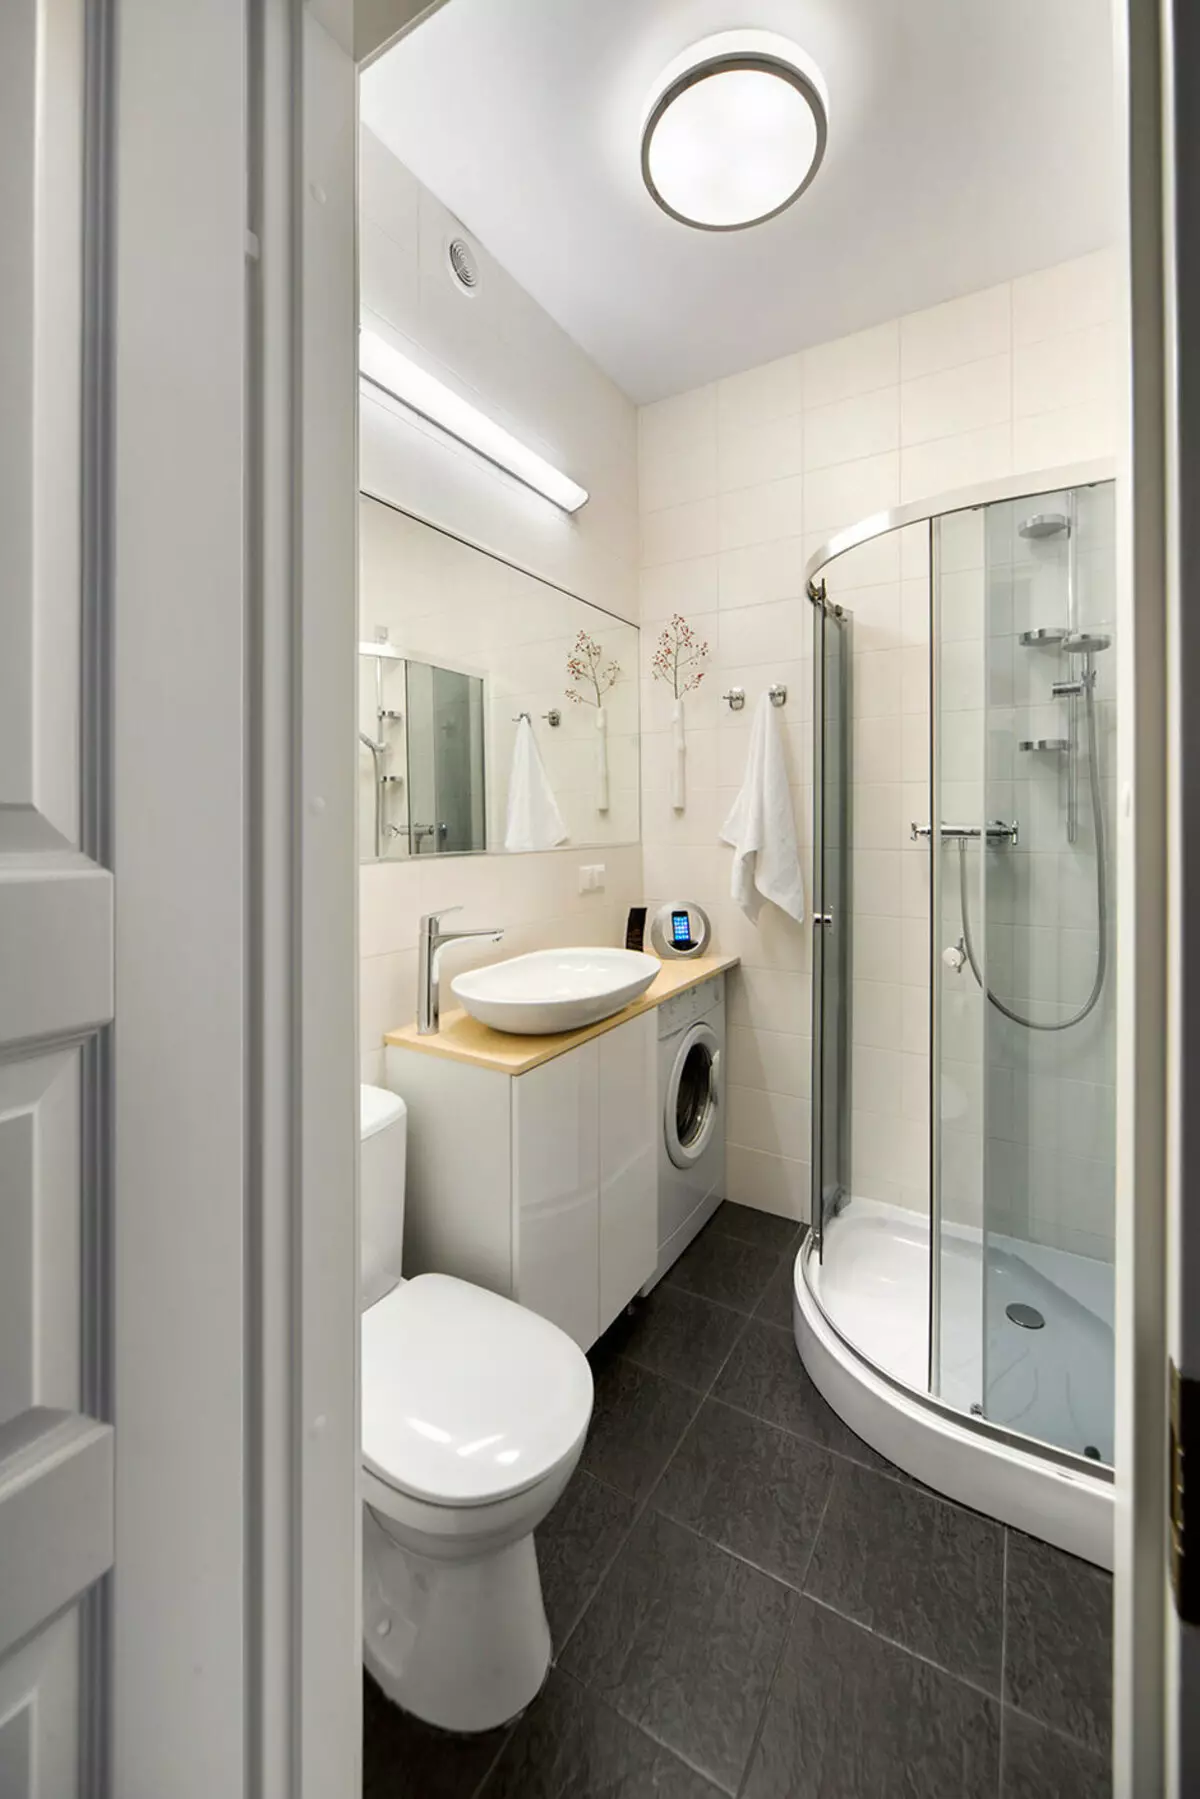 עיצוב אמבטיה בשילוב עם שירותים מרובע 3. M (76 תמונות): עיצוב פנים חדר אמבטיה עם מכונת כביסה, הנחת חדר קטן 10068_49